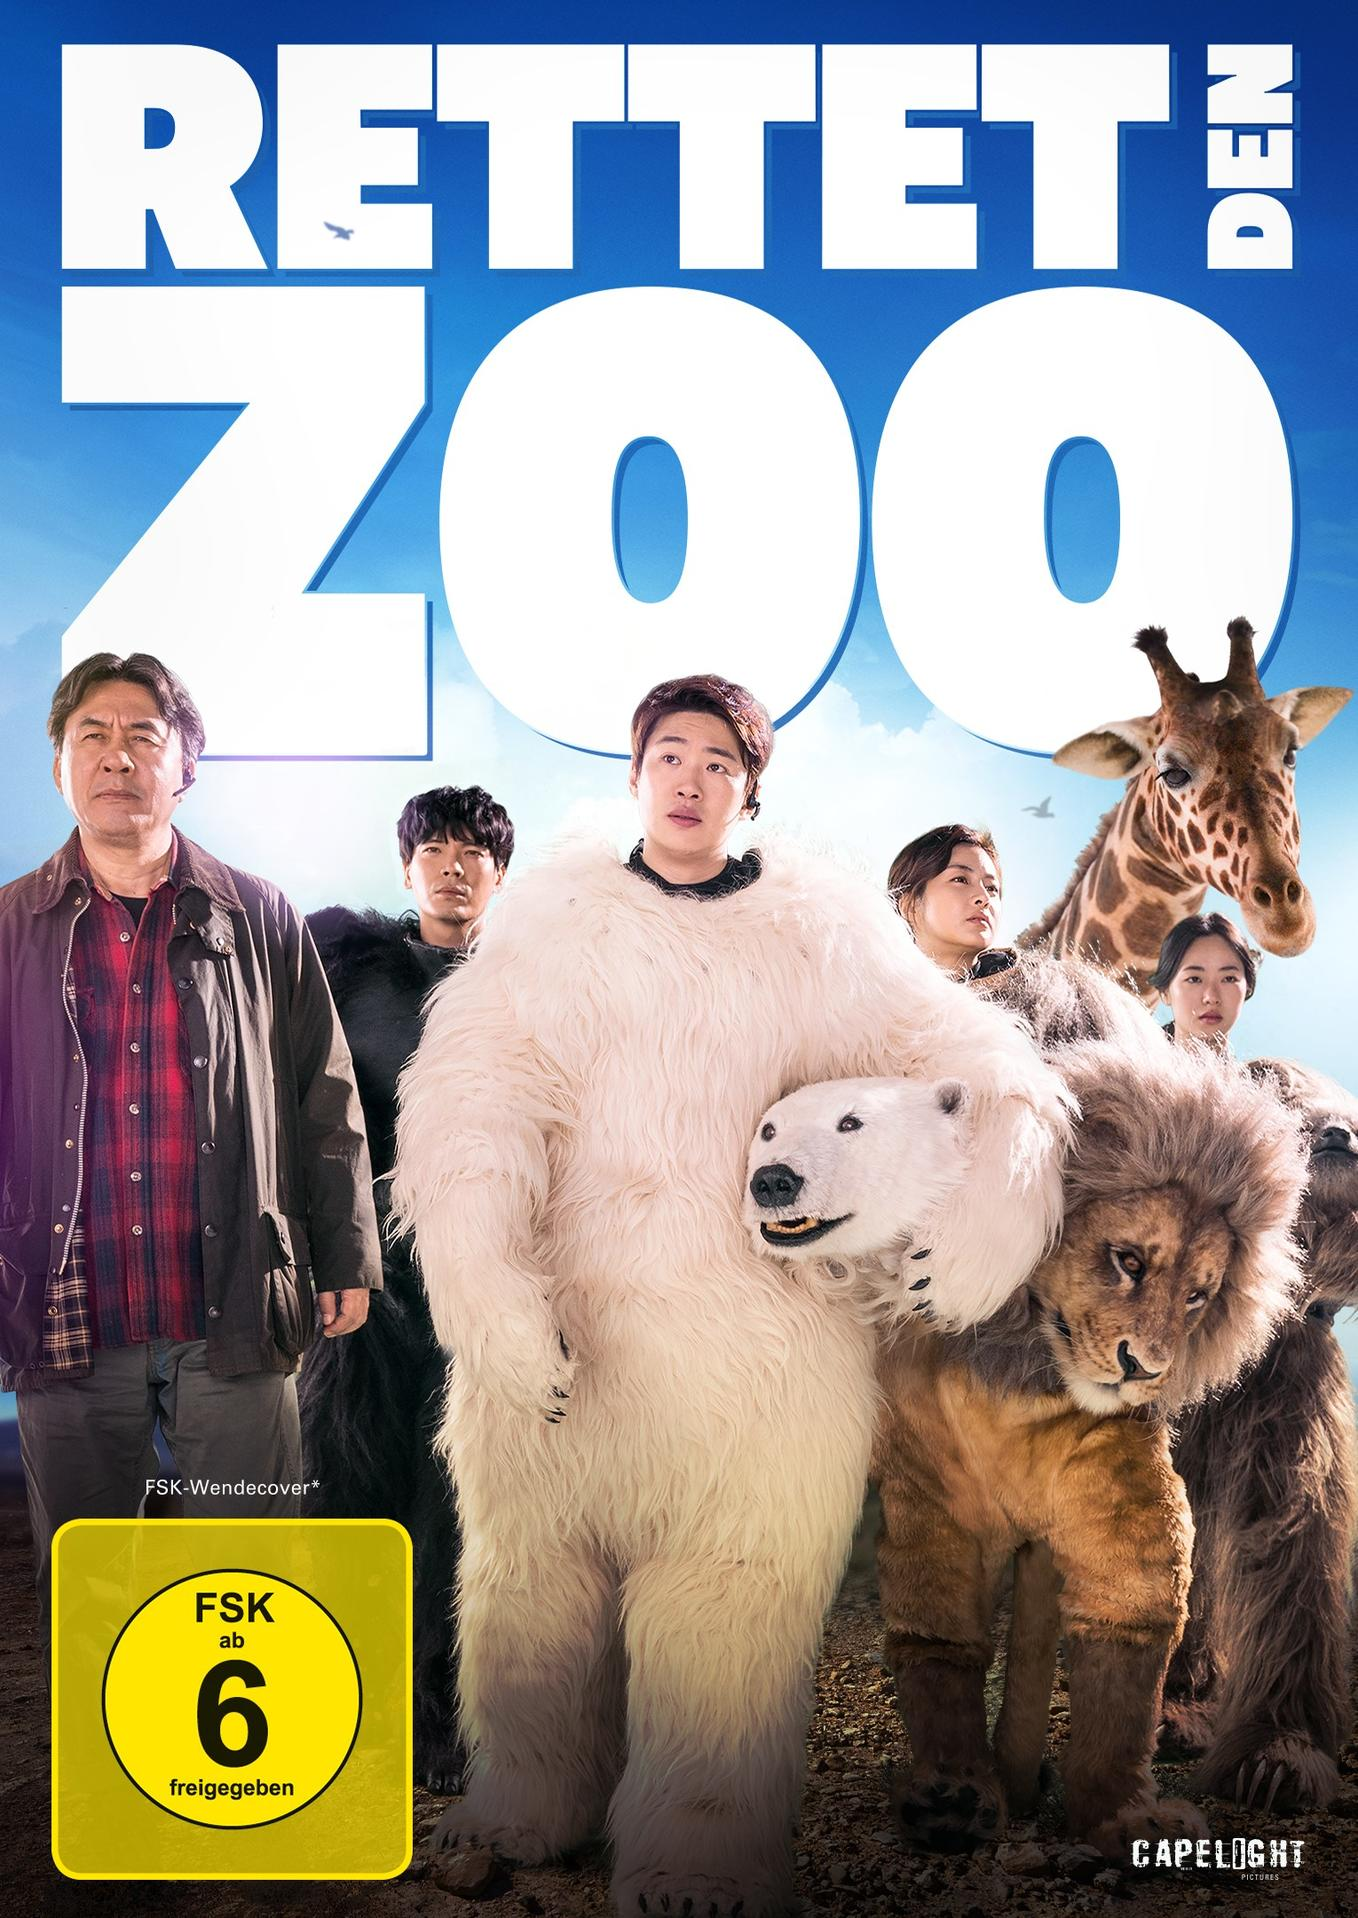 DVD den Rettet Zoo